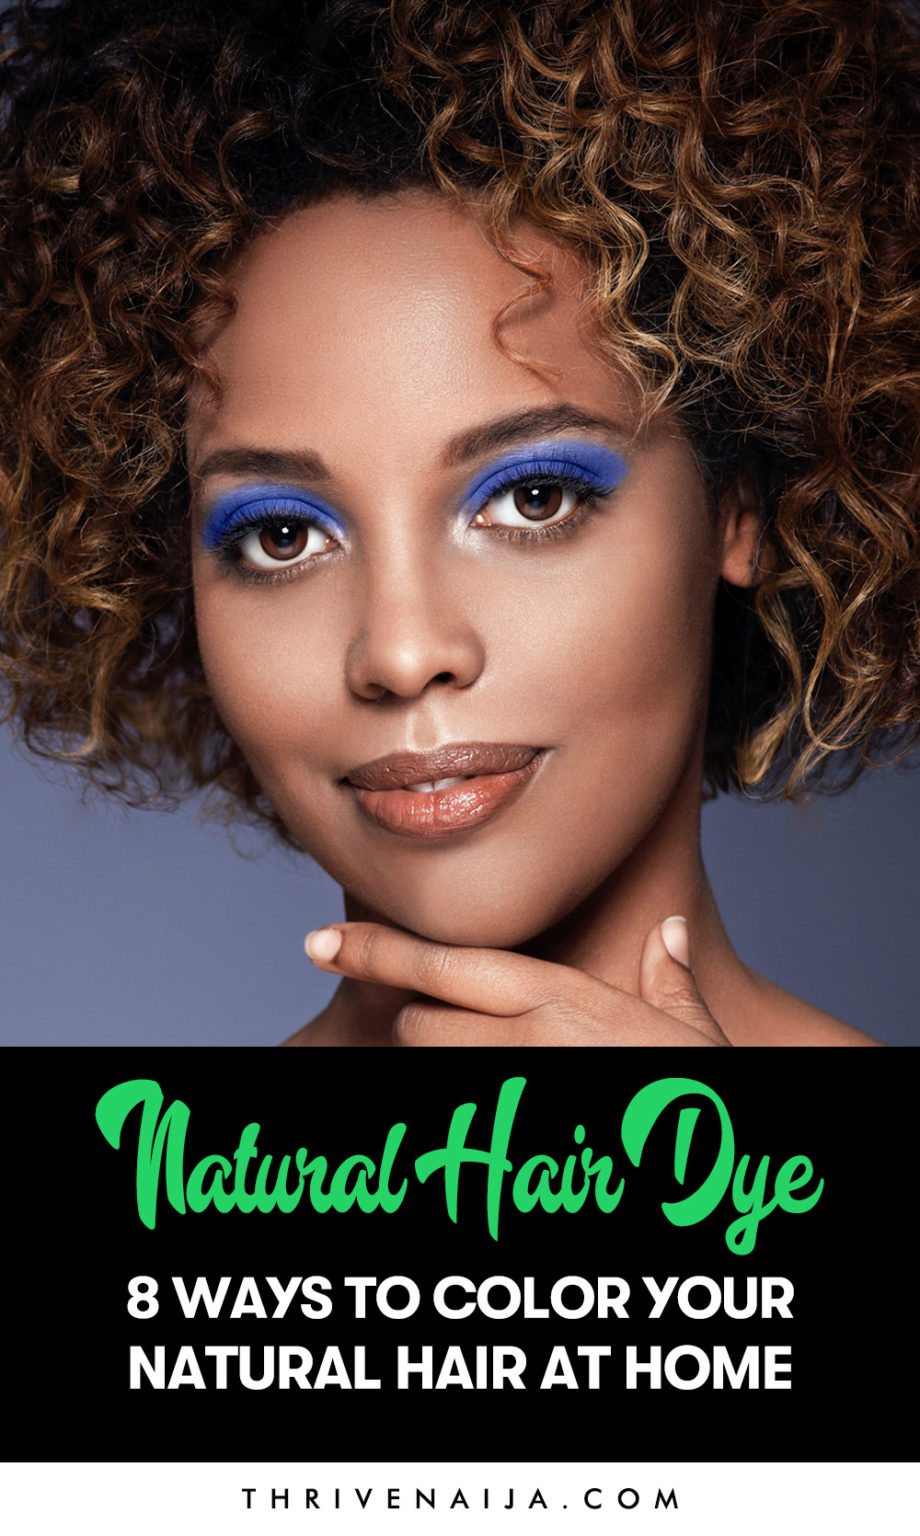 Natural Hair Dye 8 Ways To Color Your Natural Hair At